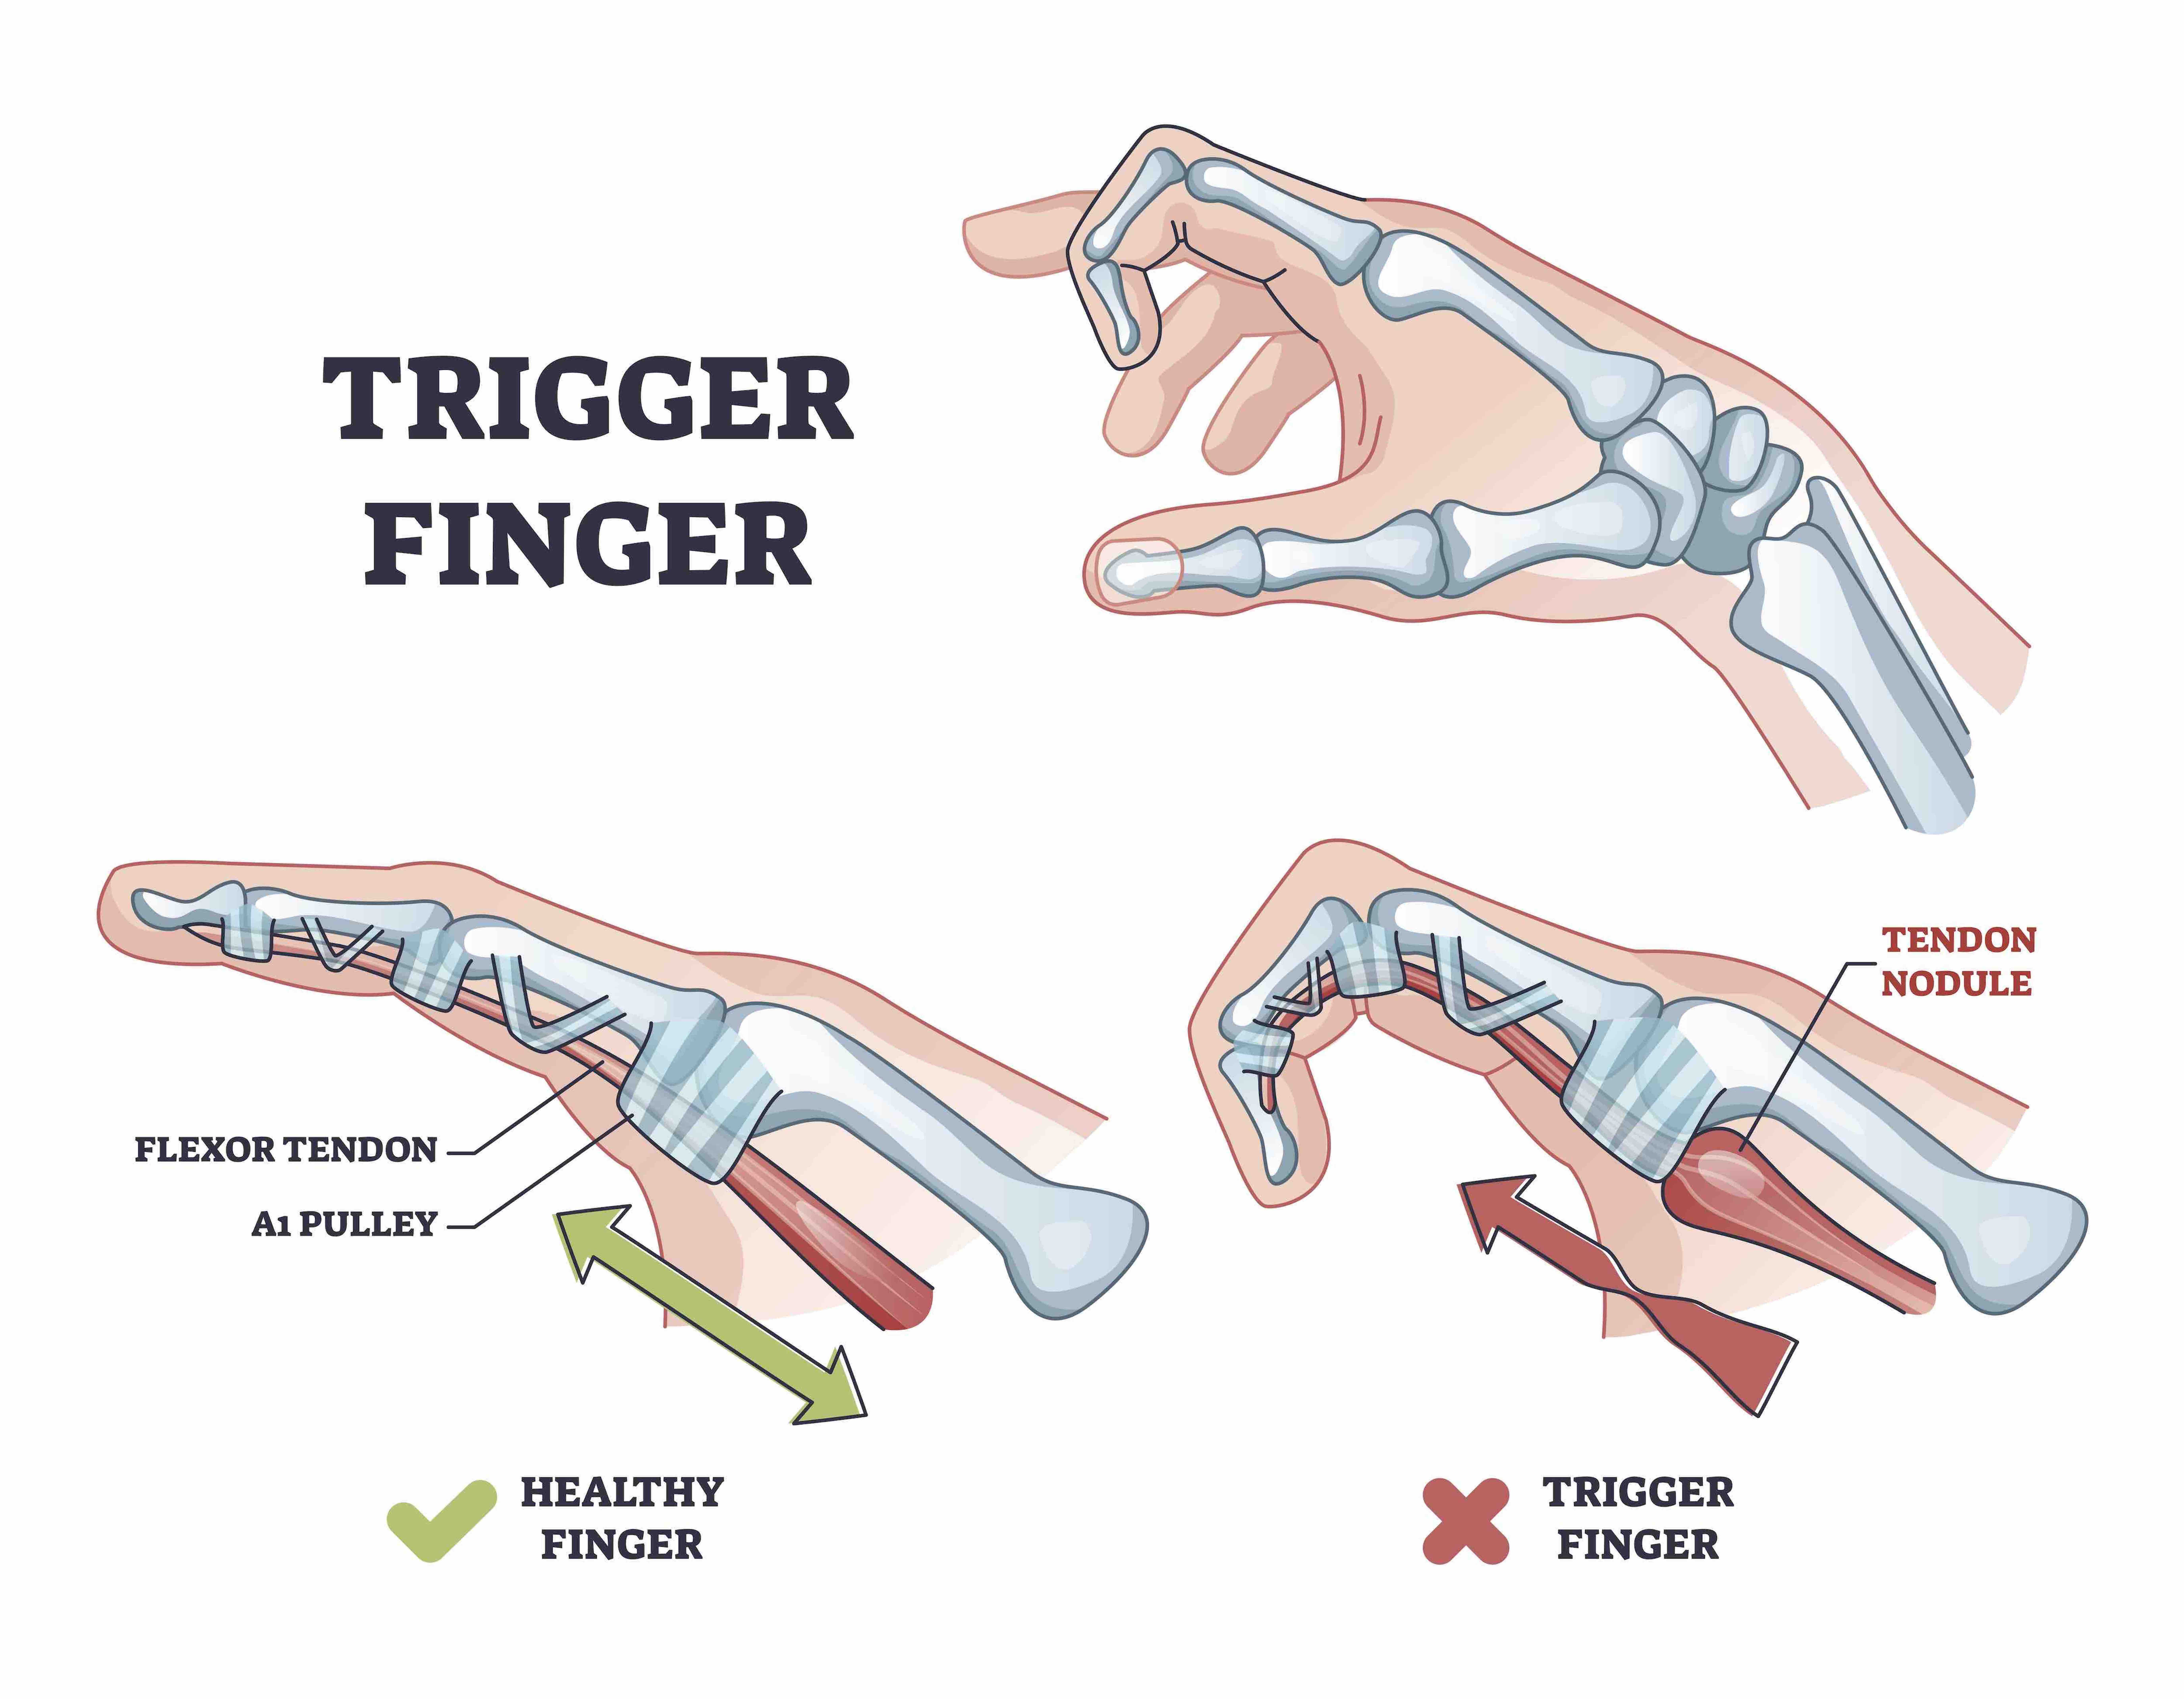 Tendon nodule creating trigger finger